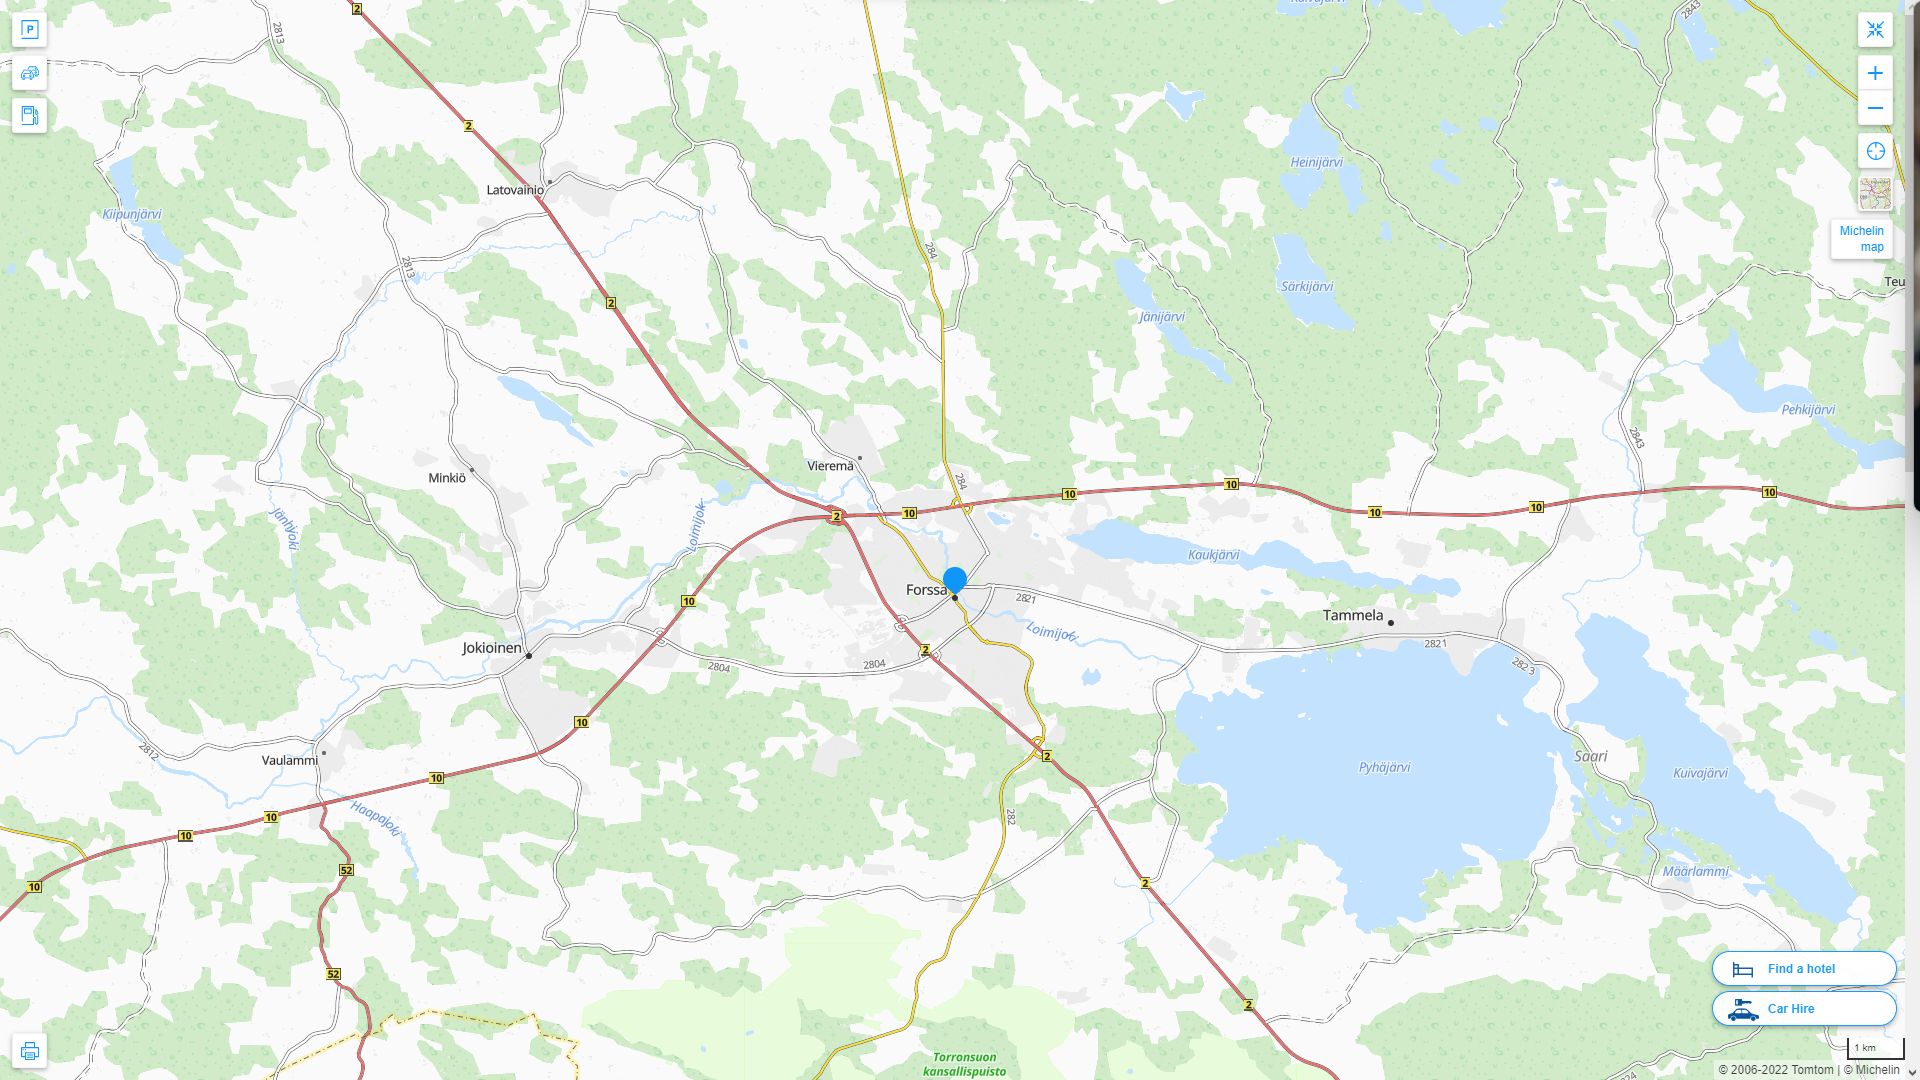 Forssa Finlande Autoroute et carte routiere